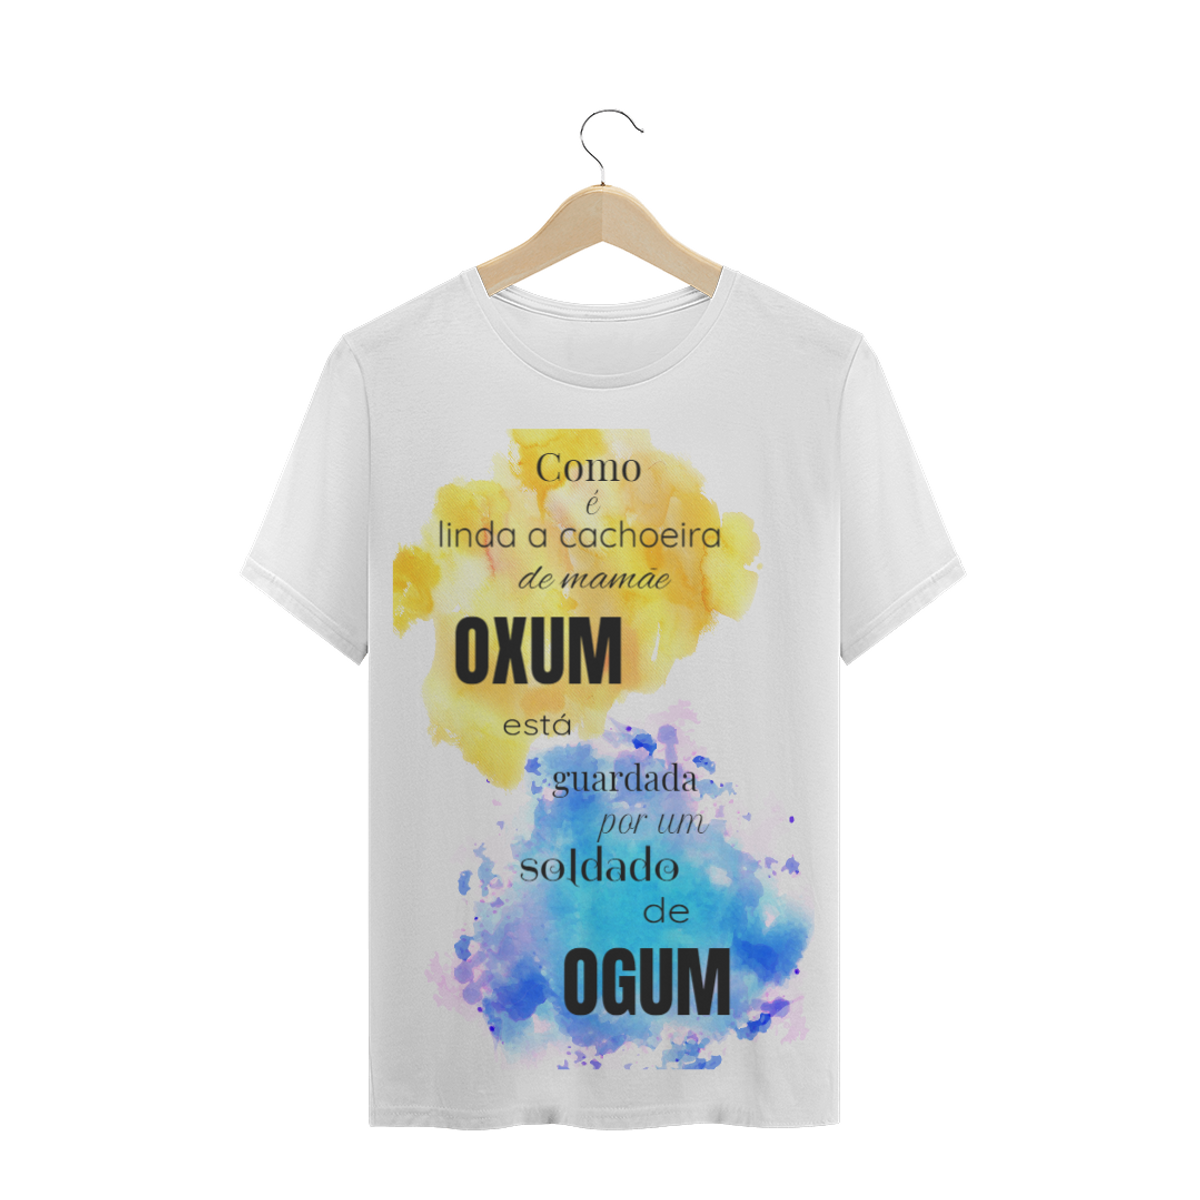 Nome do produtoUmbanda - Oxum & Ogum